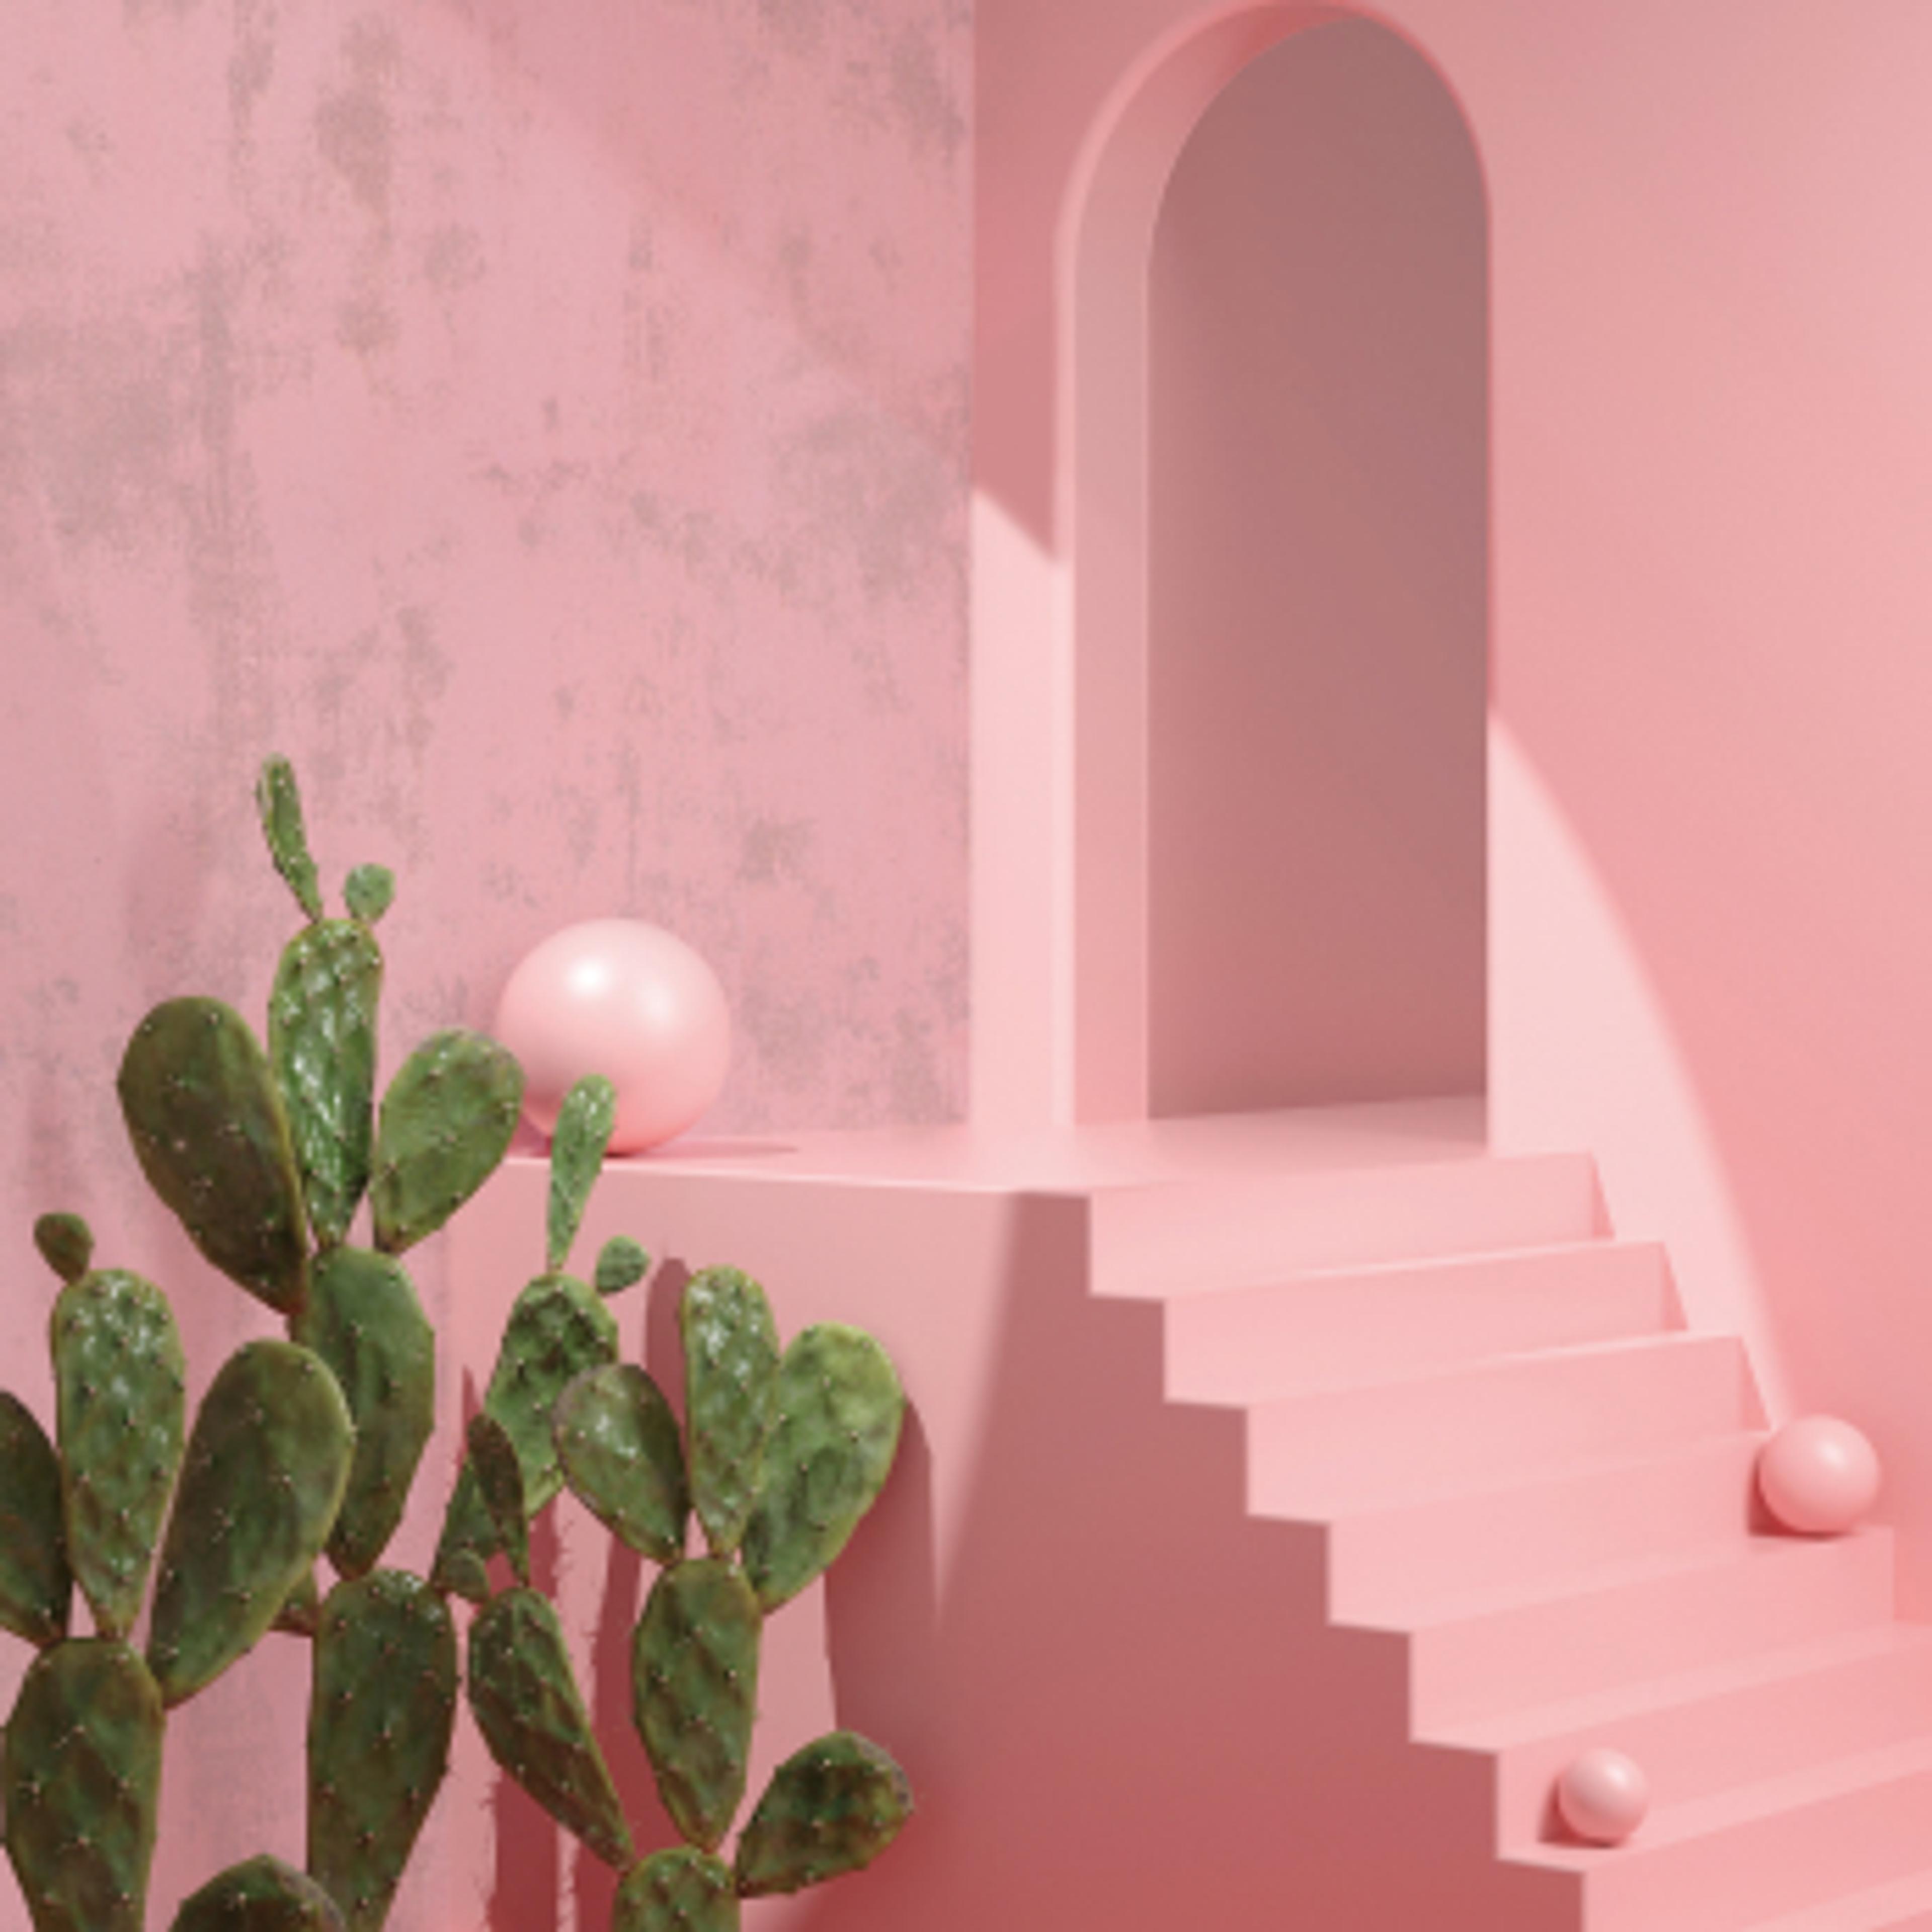 Kaktuser ved siden av rosa trapp, med kuler i trappetrinnene og én øverst. 